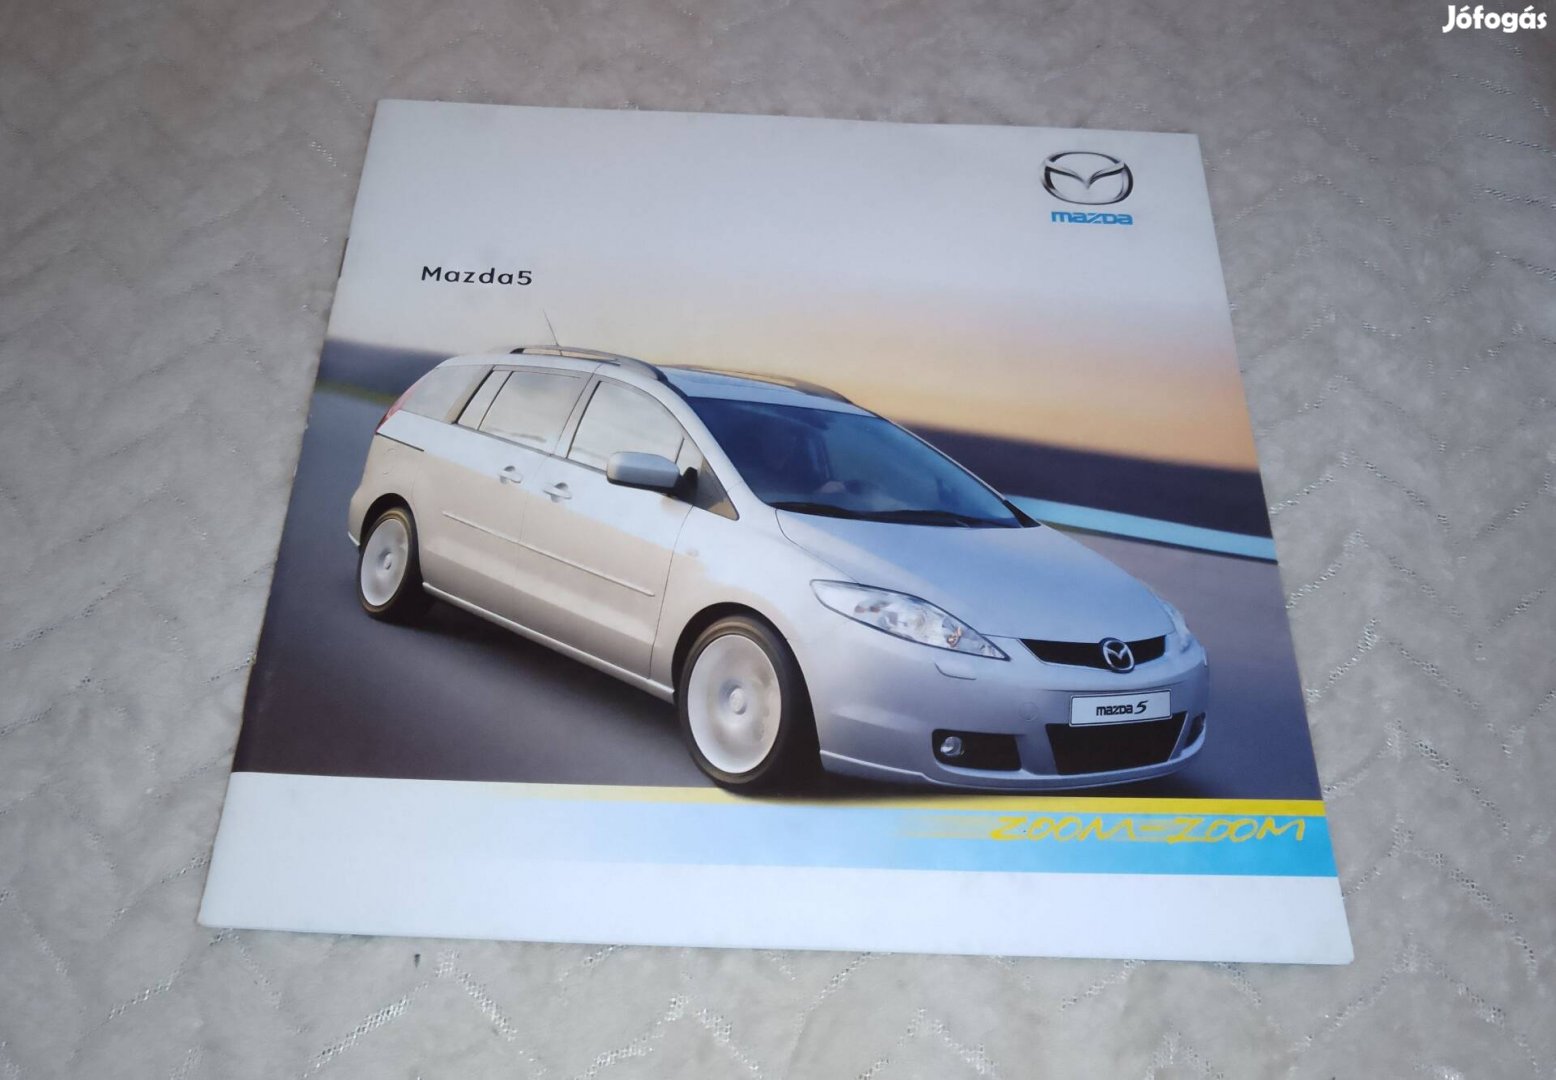 Mazda 5 (2005) magyar nyelvű prospektus, katalógus.